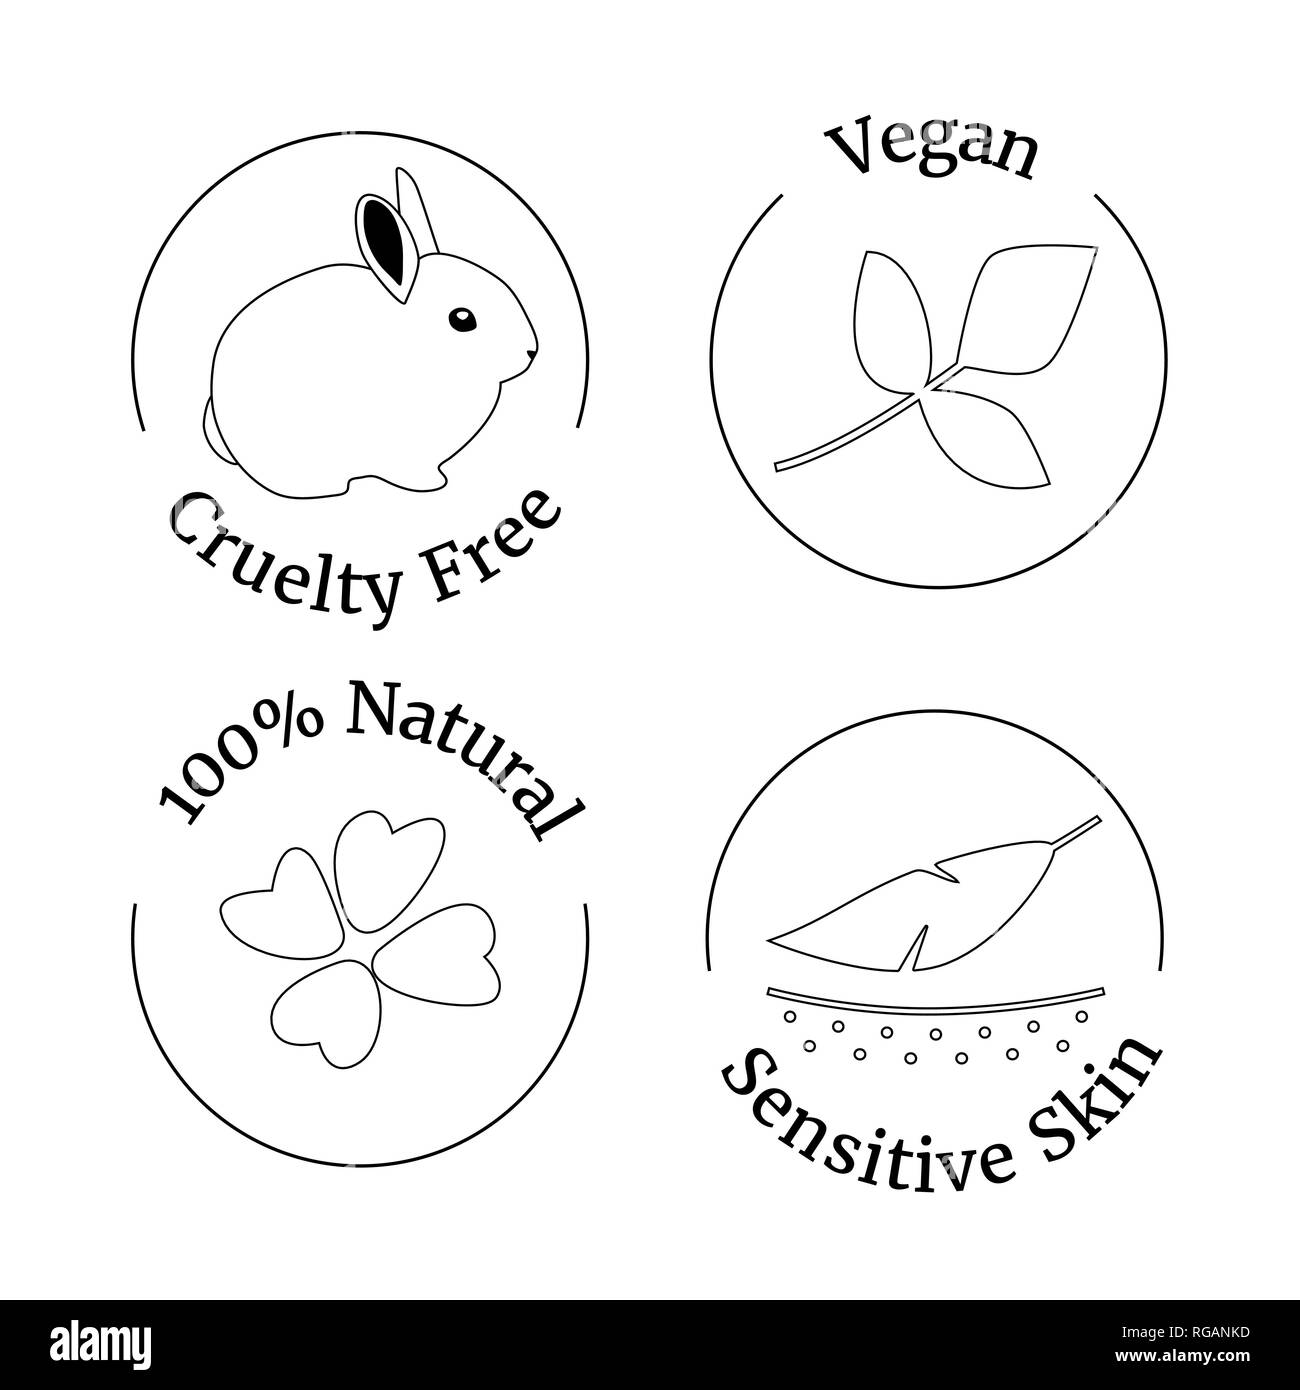 Vektor einrichten von Logo Design Template, Symbole und Kennzeichen für Natur- und Biokosmetik - Cruelty Free, Skizze Stil Stock Vektor